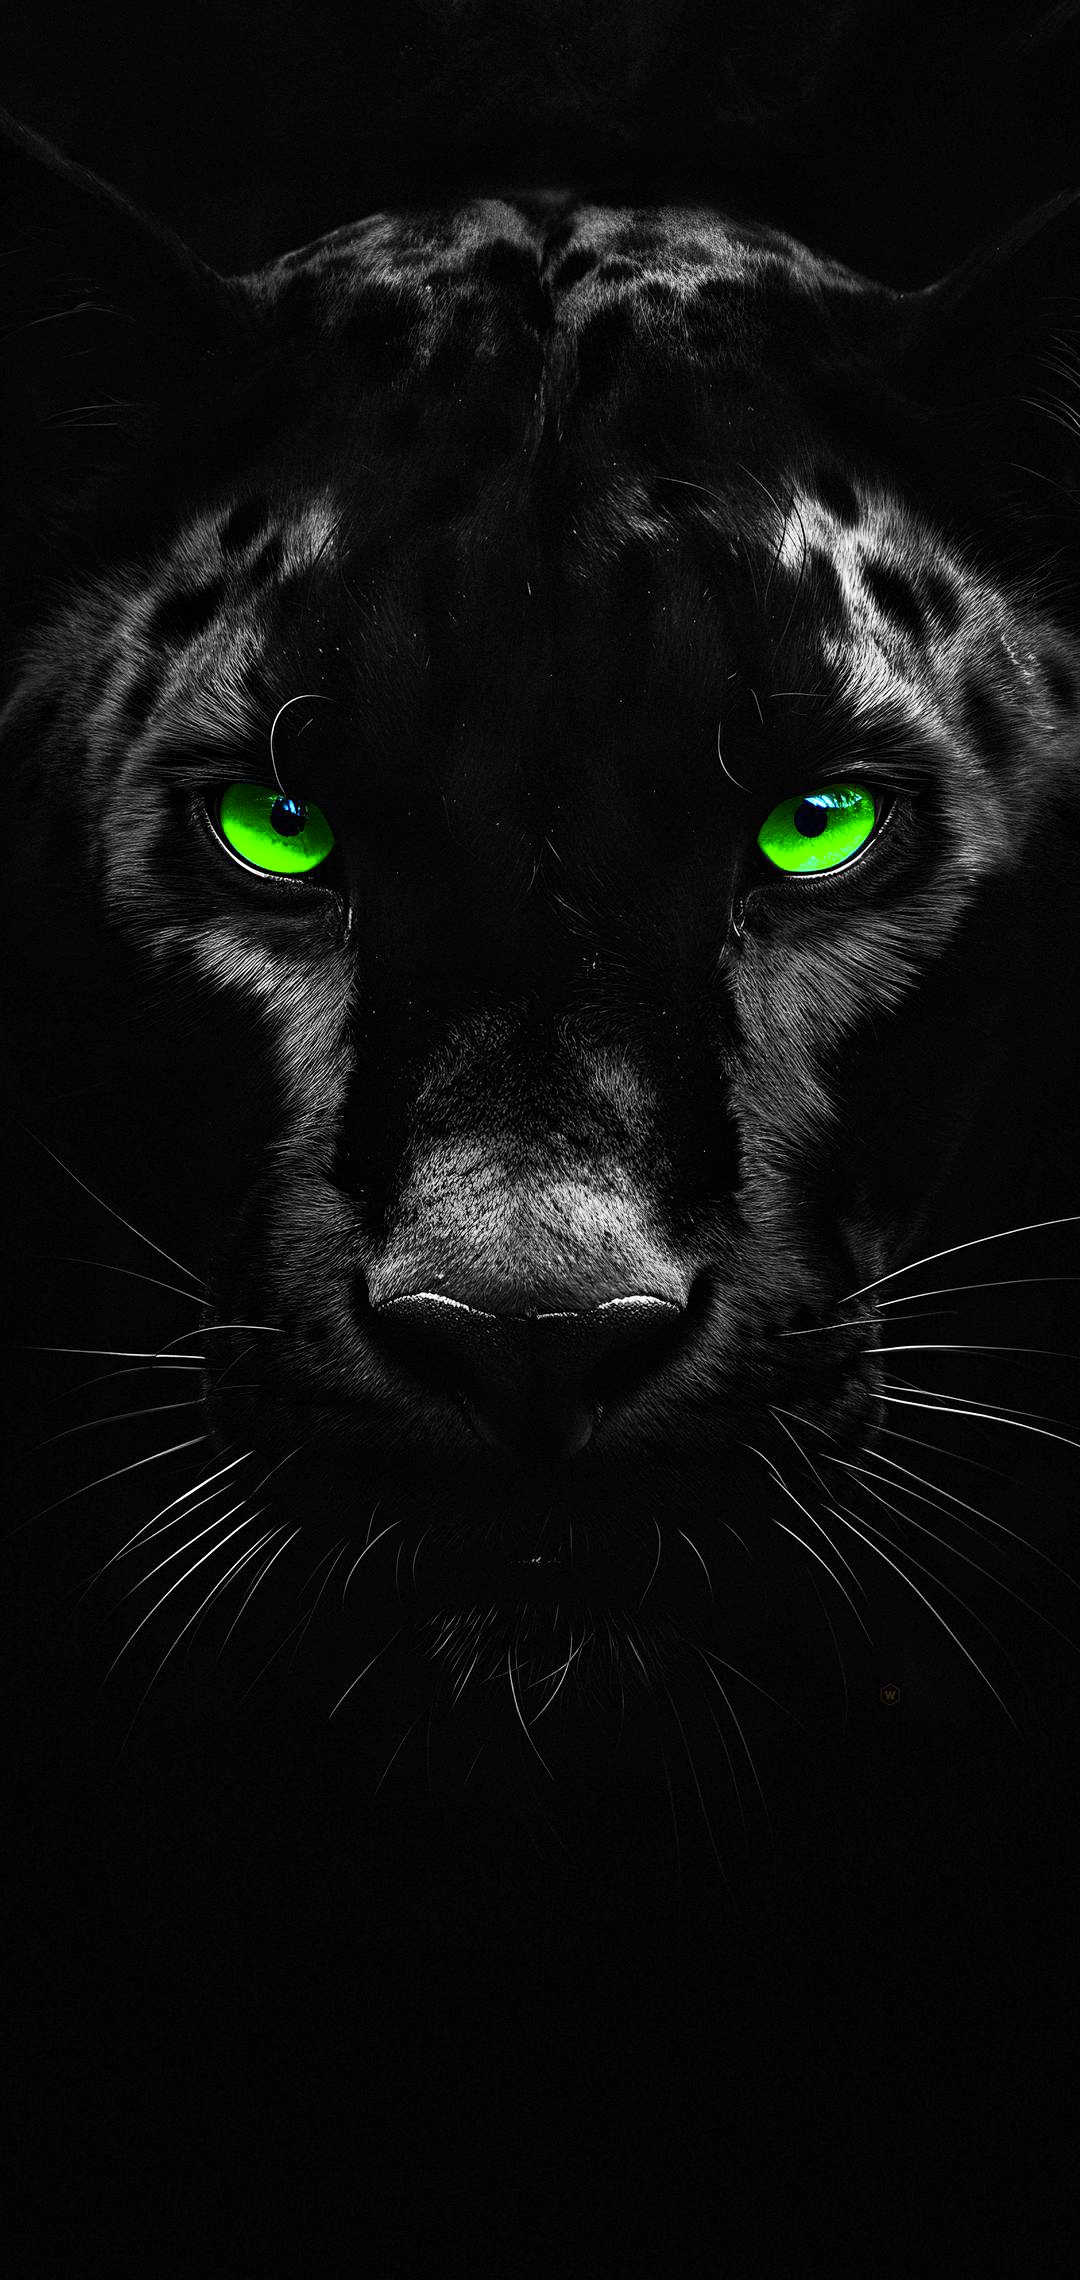 Black Panther Wallpaper Images - Free Download on Freepik